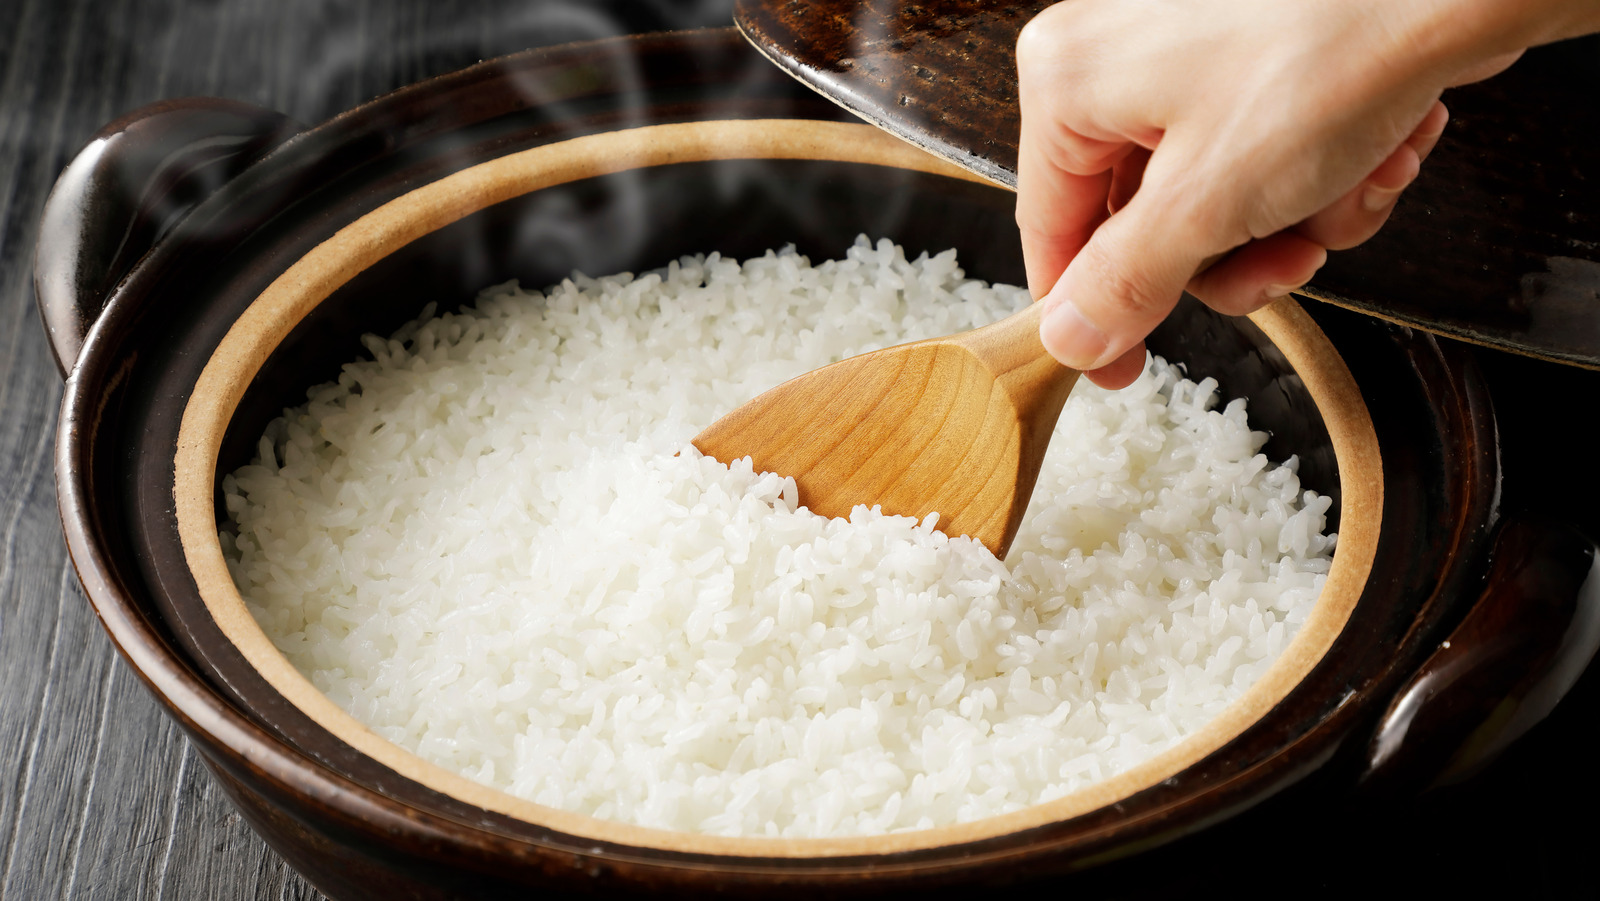 خبراء يوضحون أهمية غسل الأرز جيداً